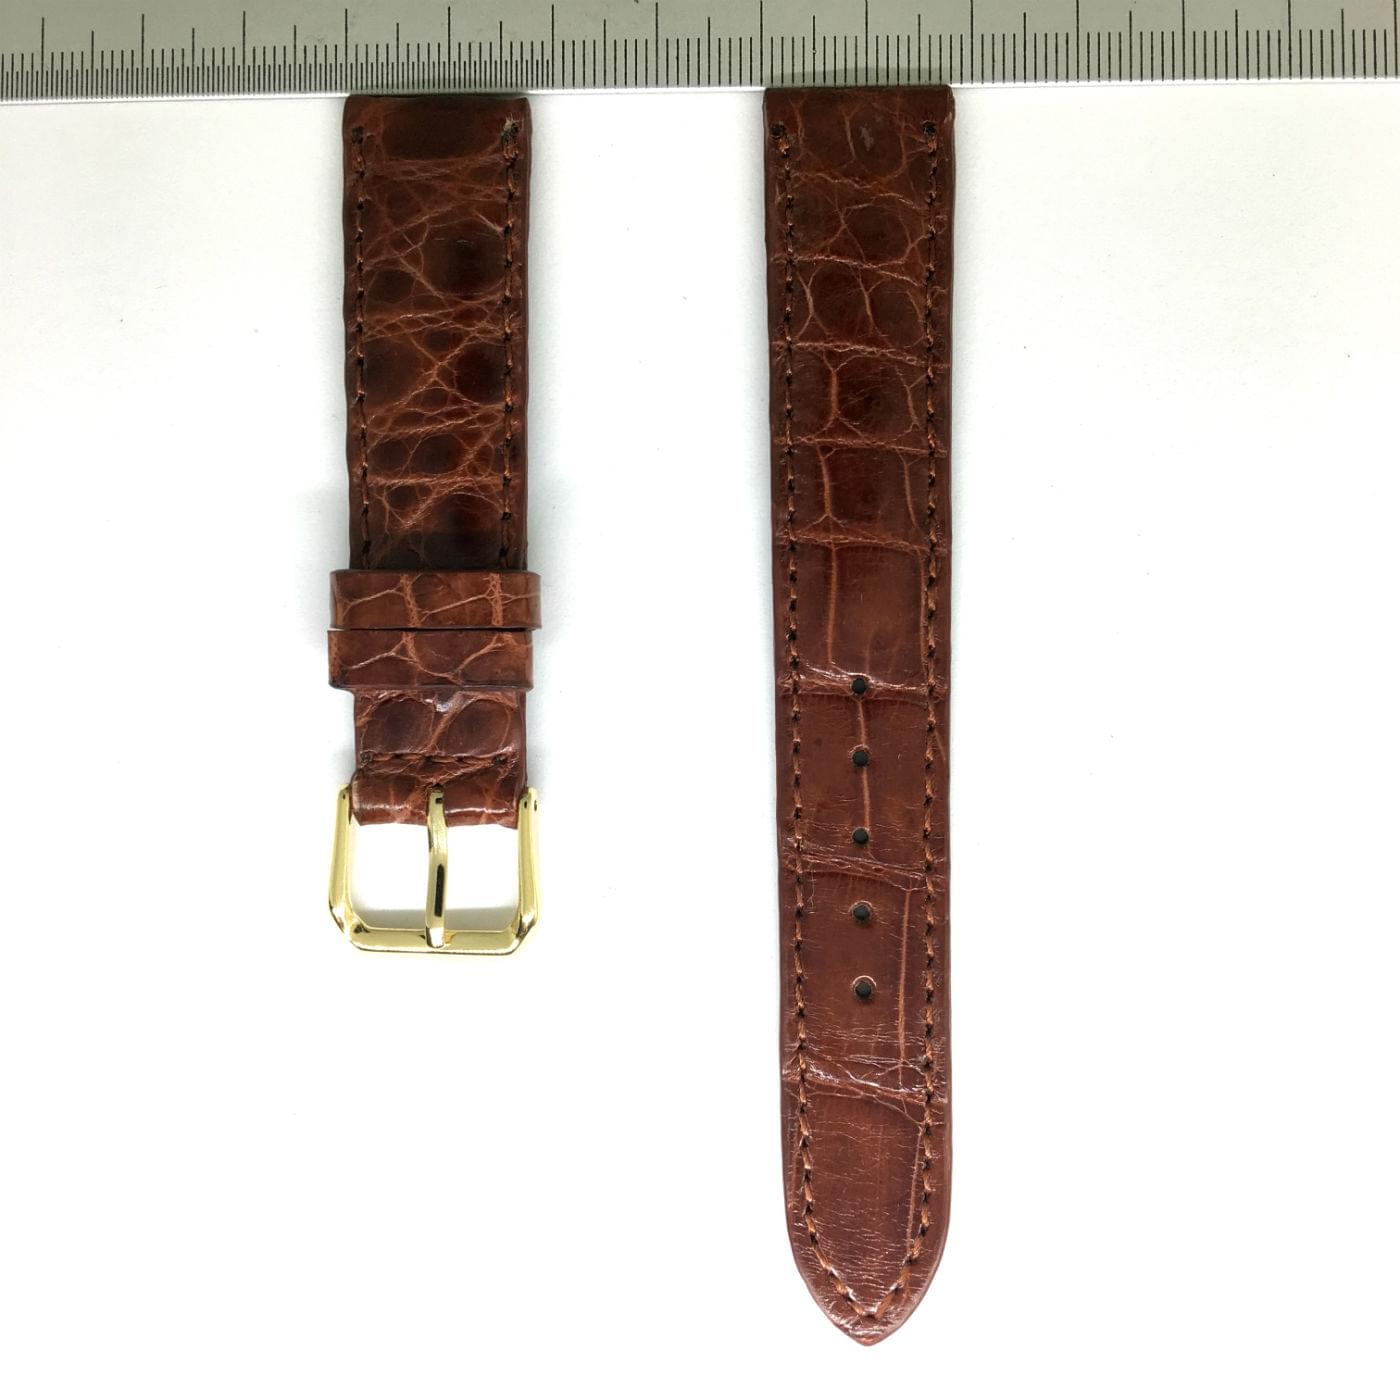 Wrist Watch Strap Crocodile 18mm Dark Brown - Hien Thao Shop